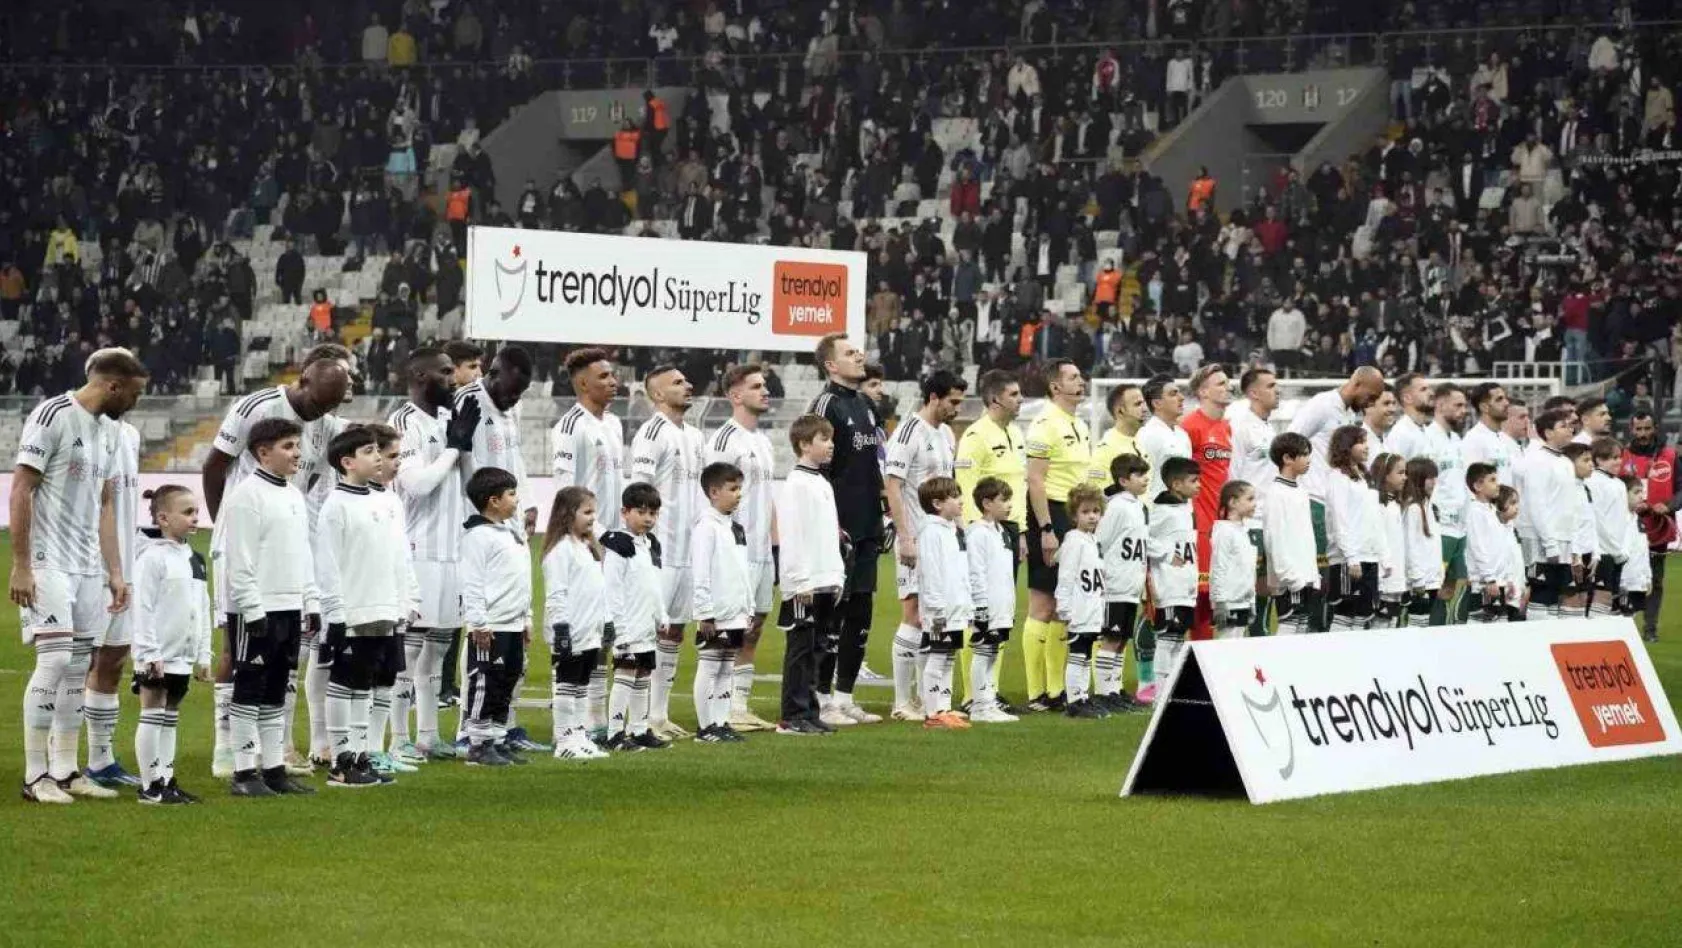 Trendyol Süper Lig: Beşiktaş: 0 - Konyaspor: 0 (Maç devam ediyor)